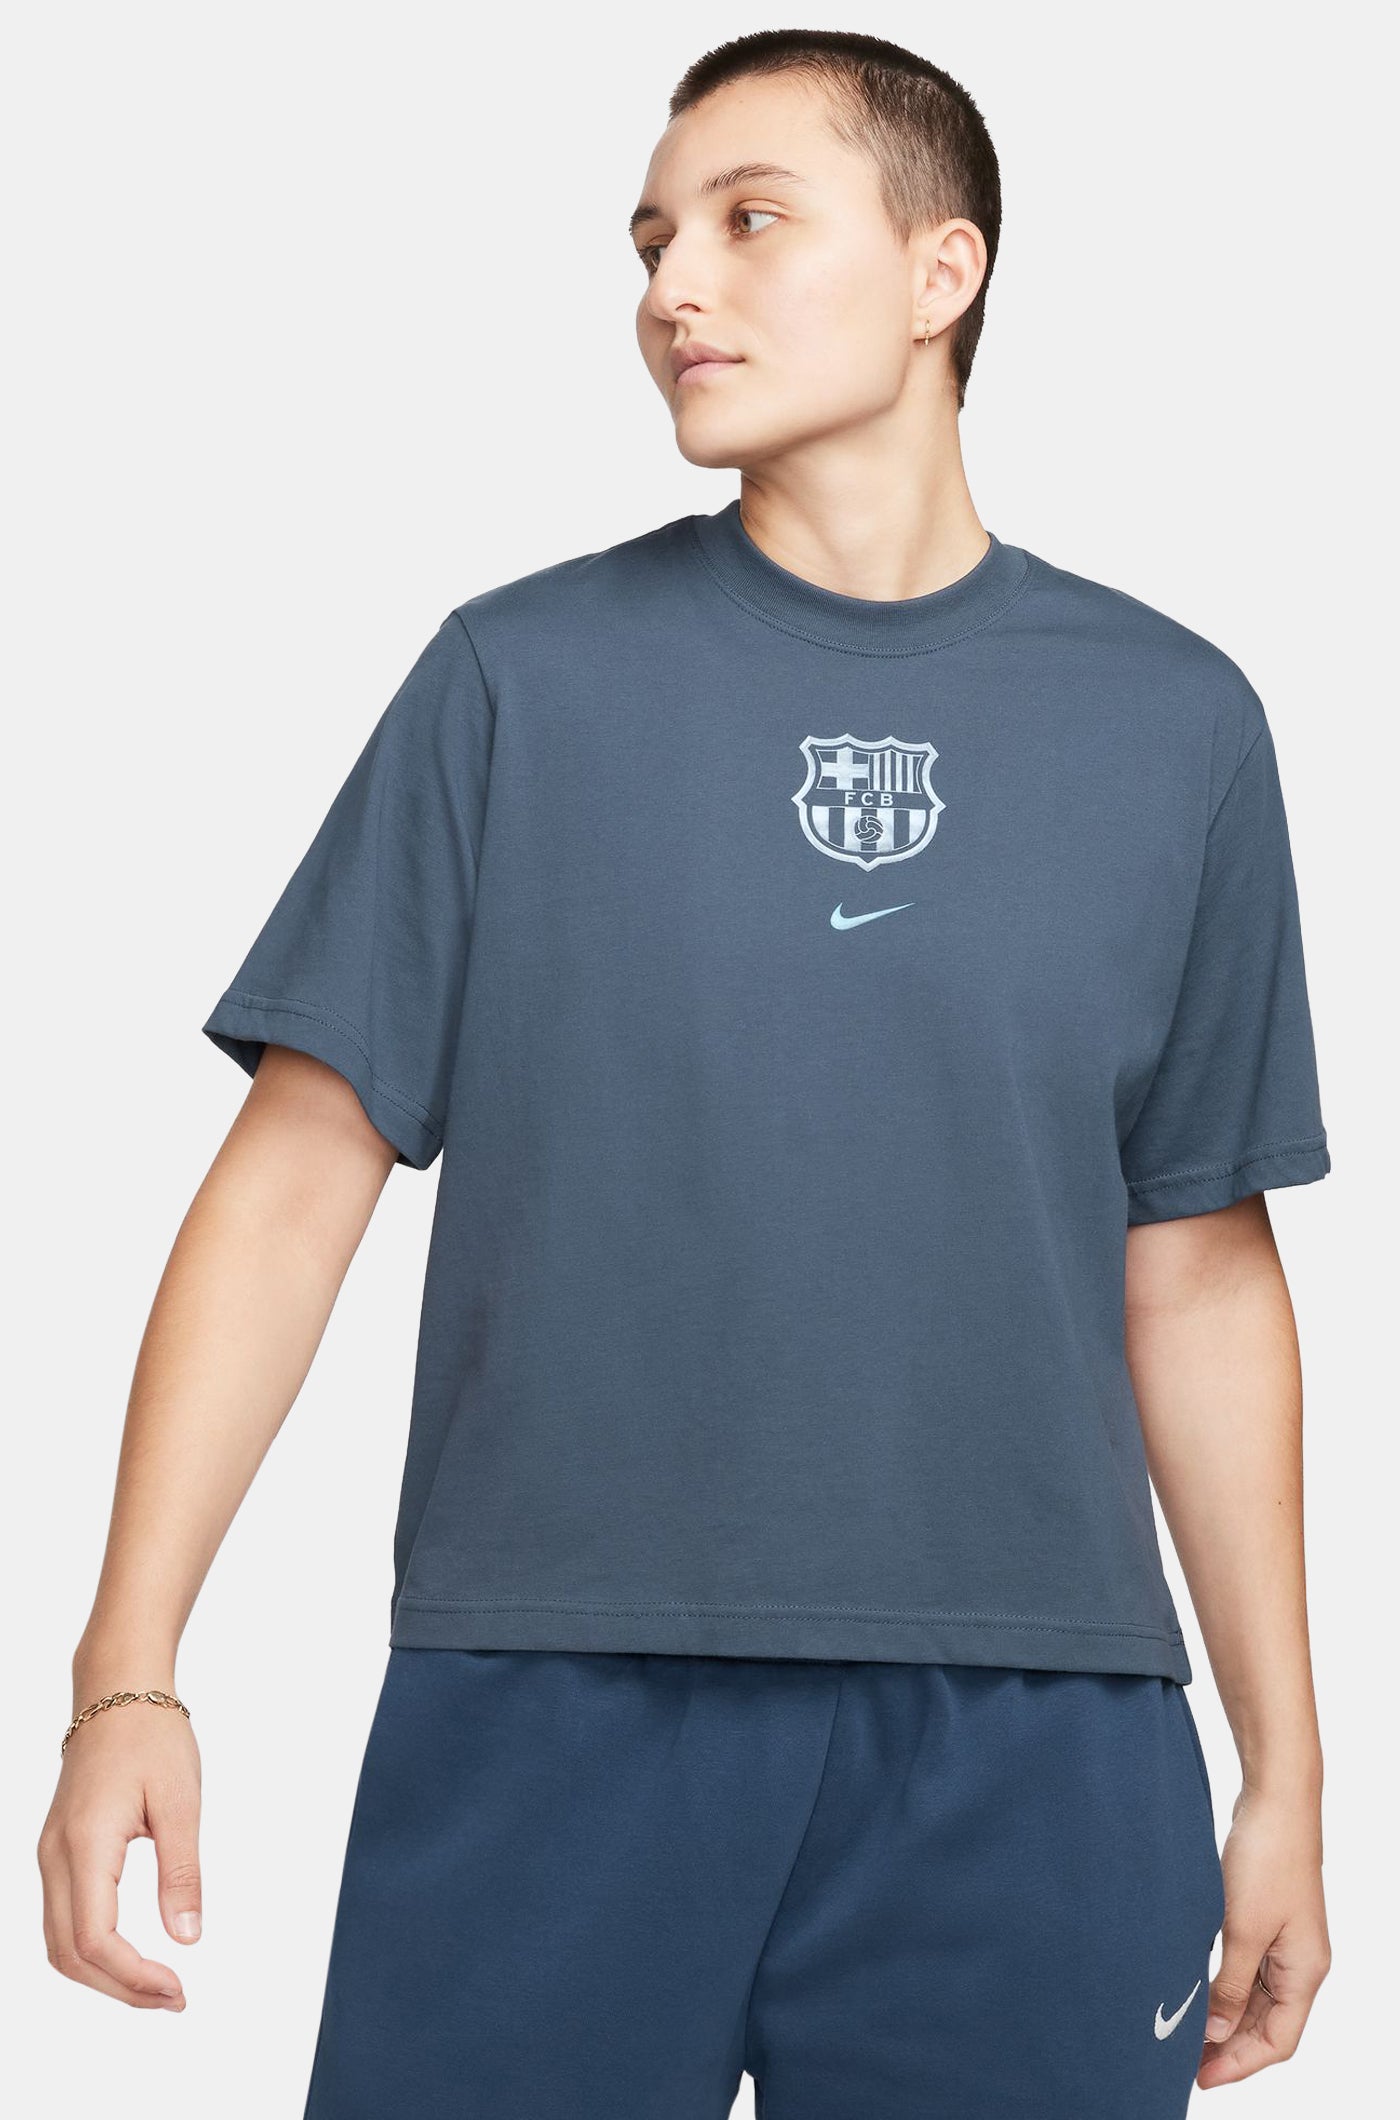 Camiseta gris escudo Barça Nike – Barça Official Store Spotify Camp Nou